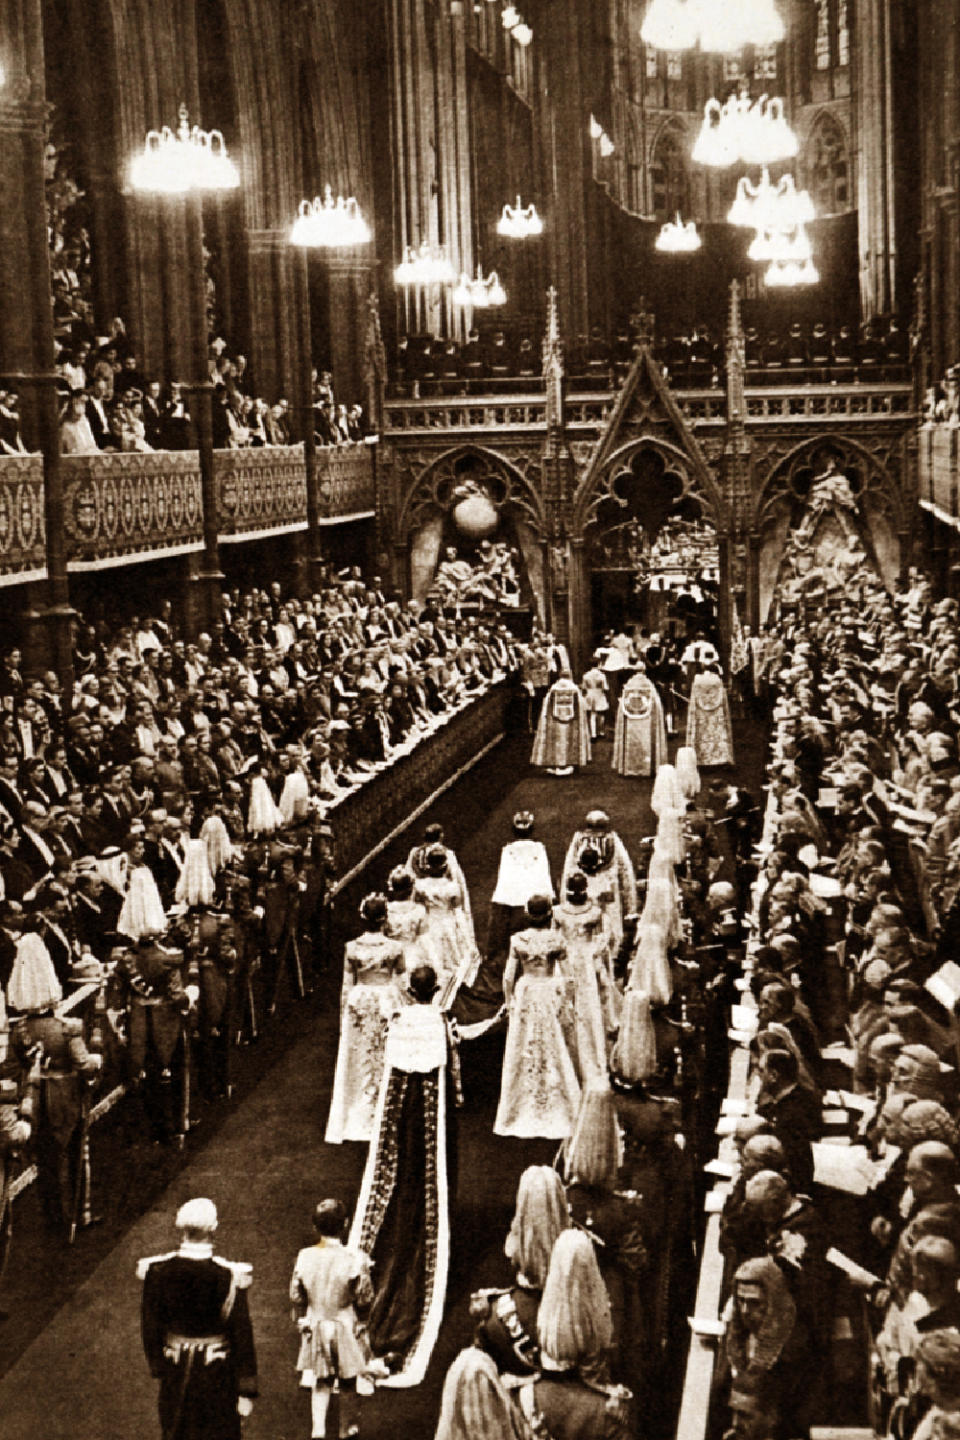 Queen Elizabeth II's Coronation Day